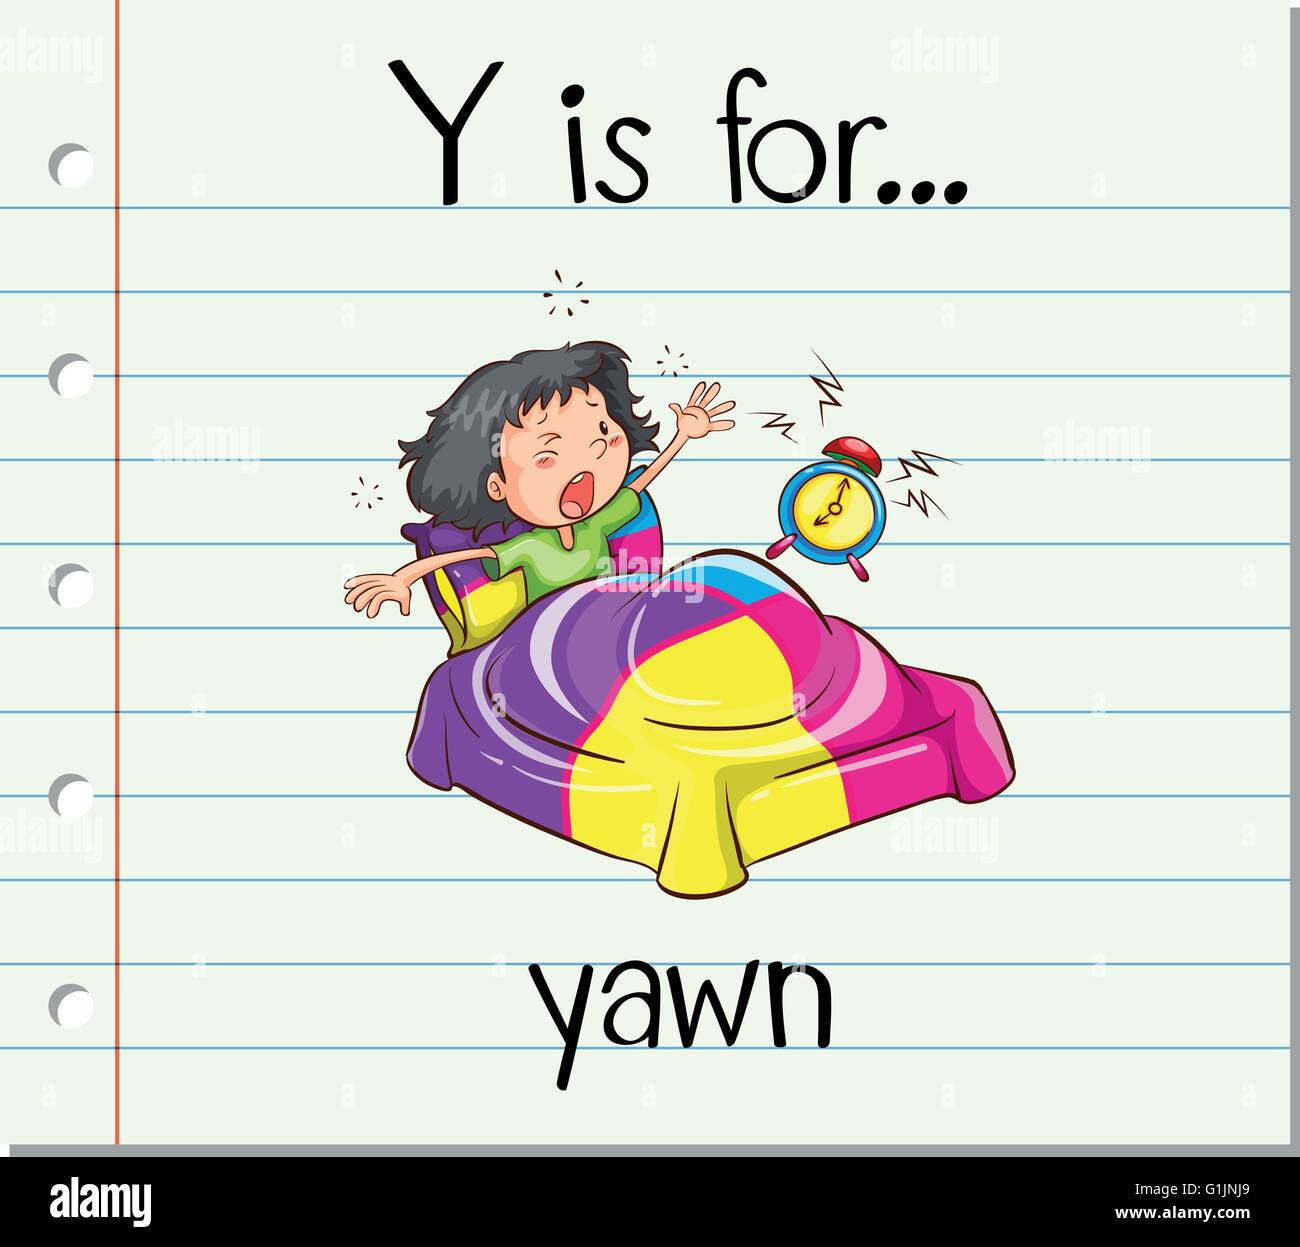 flashcard-letter-y-is-for-yawn-illustration-G1JNJ9.jpg